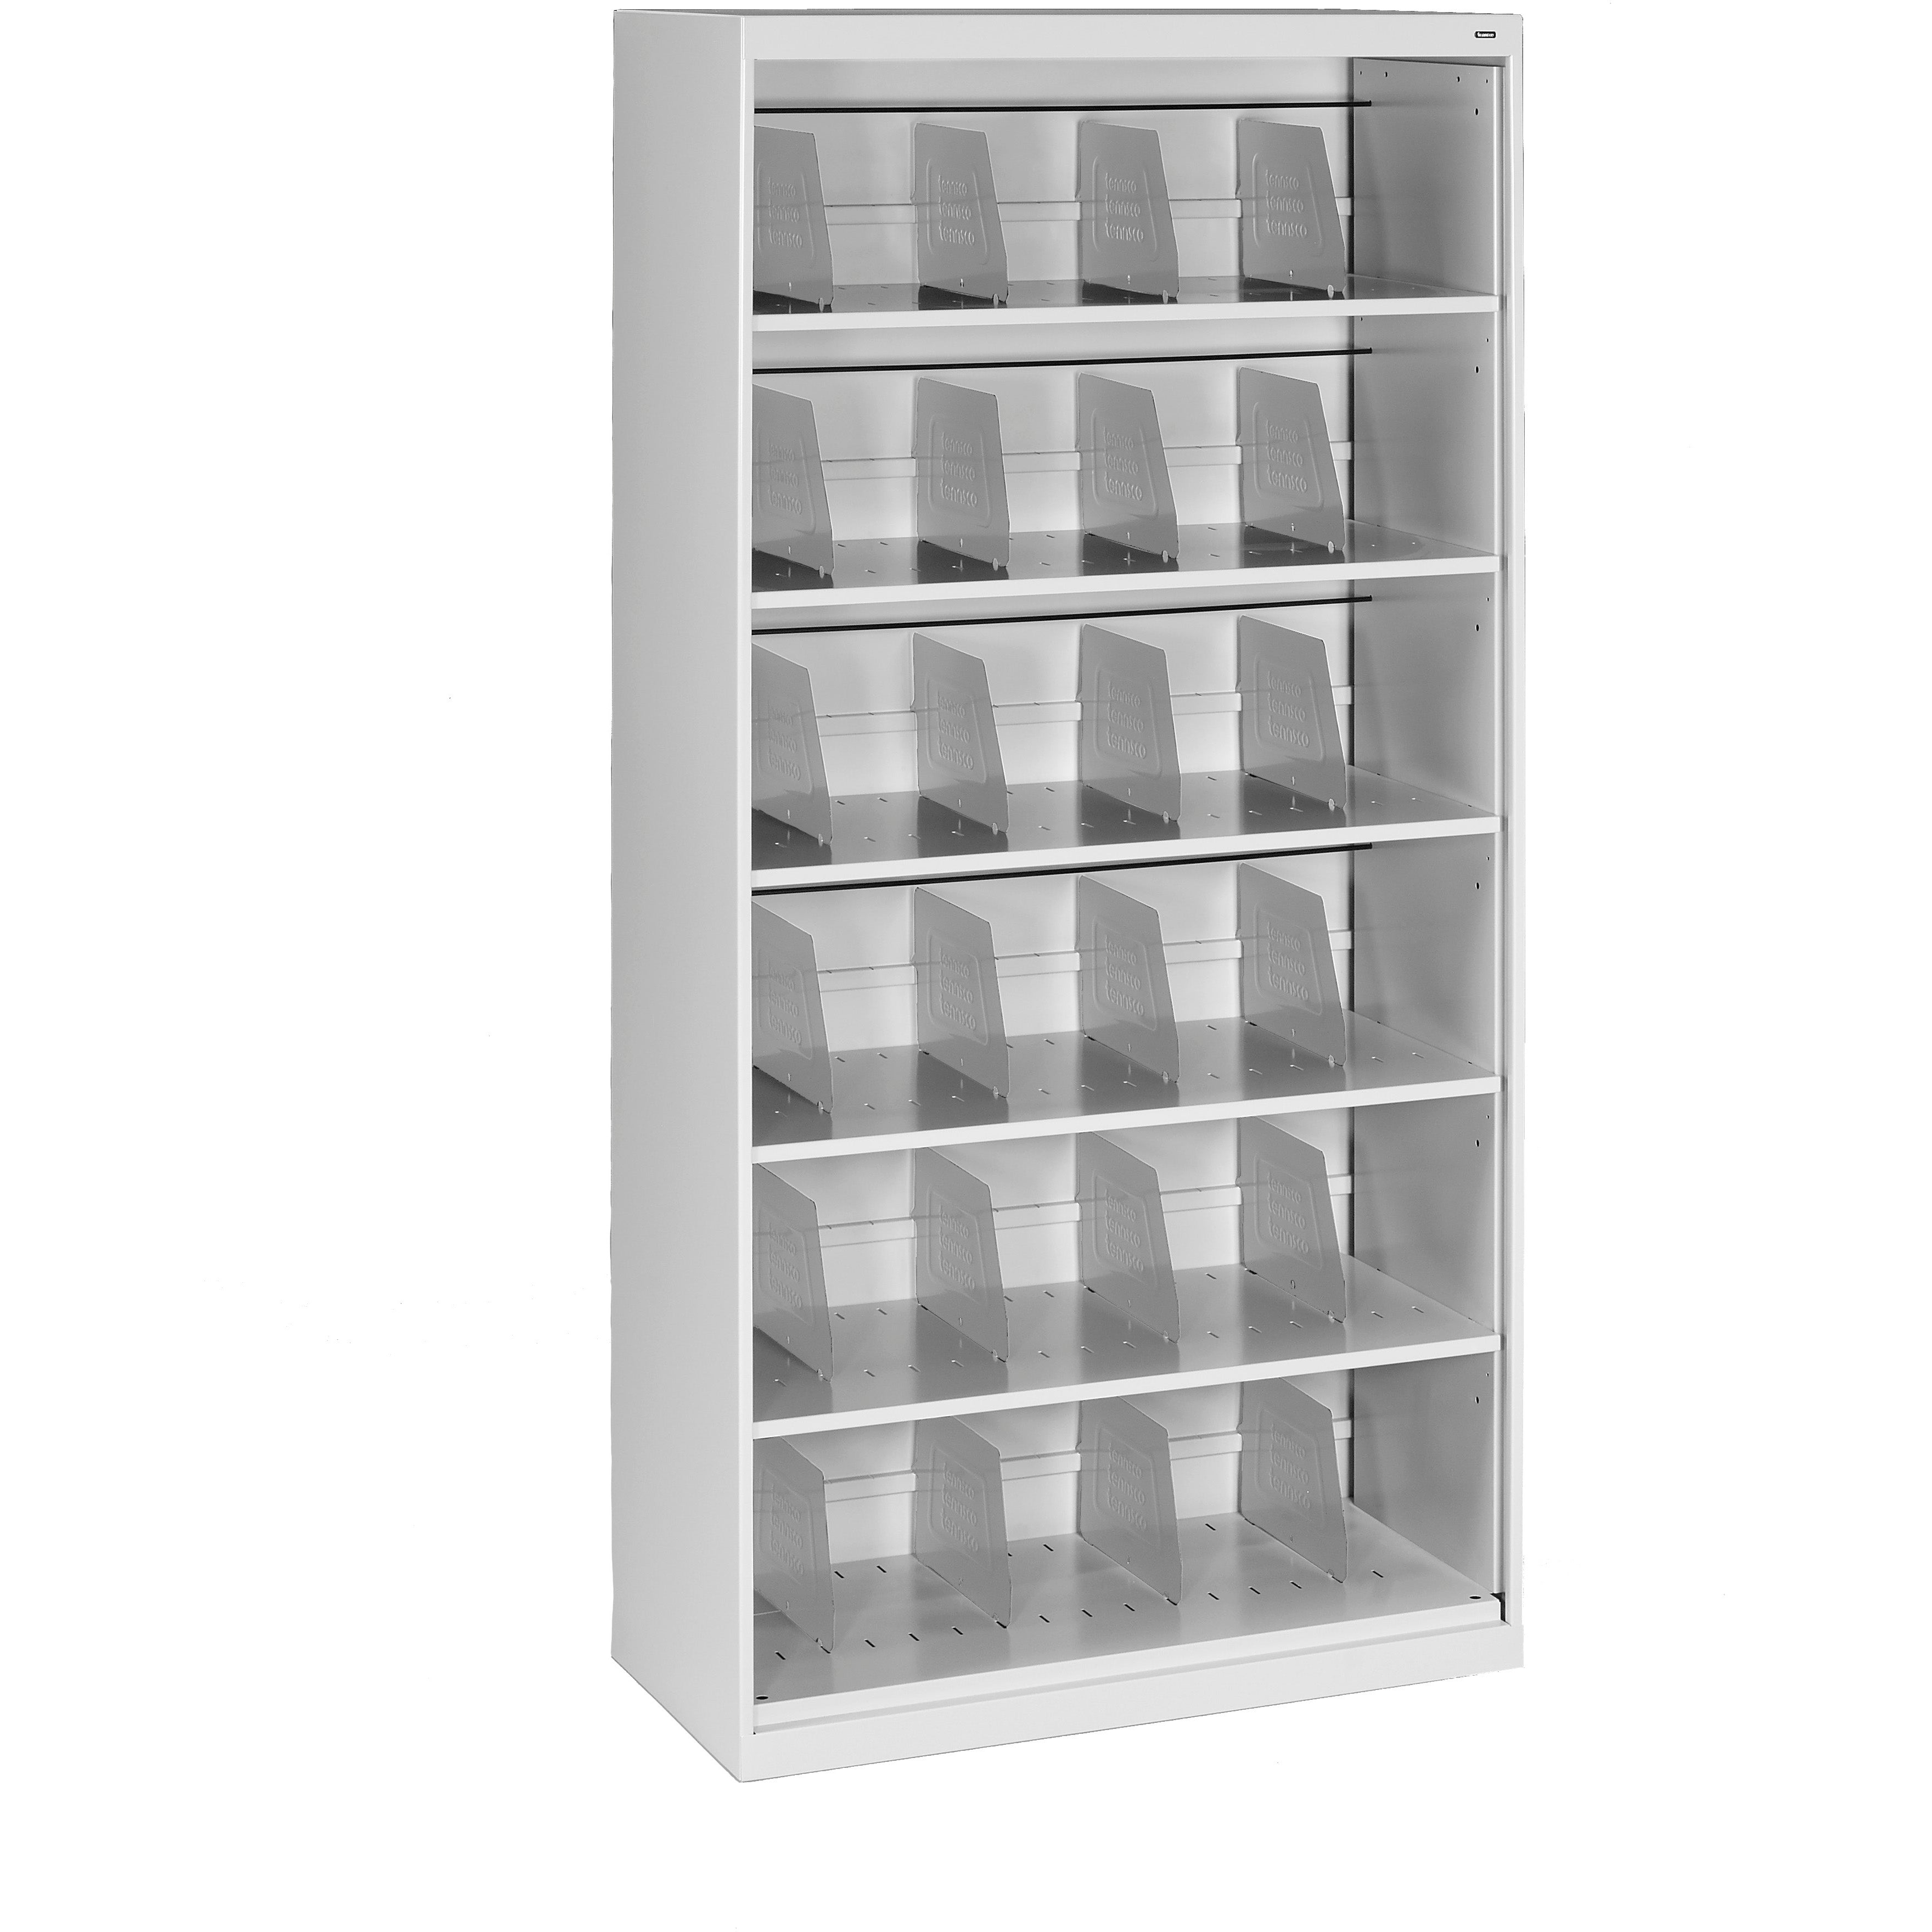 Tennsco Six-Shelf Fixed Shelf Lateral File - Open Style, FS360